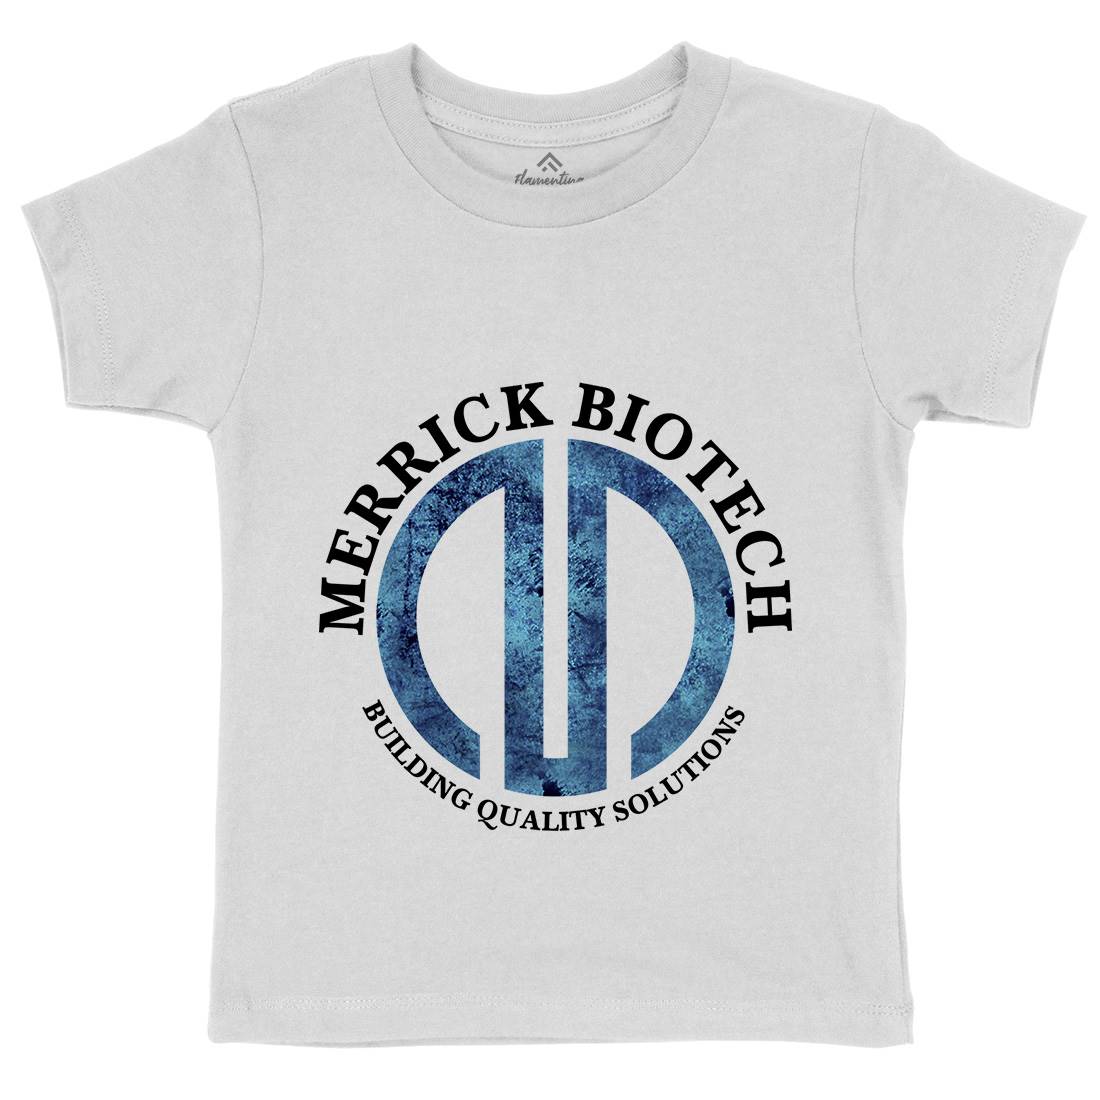 Merrick Biotech Kids Crew Neck T-Shirt Space D393